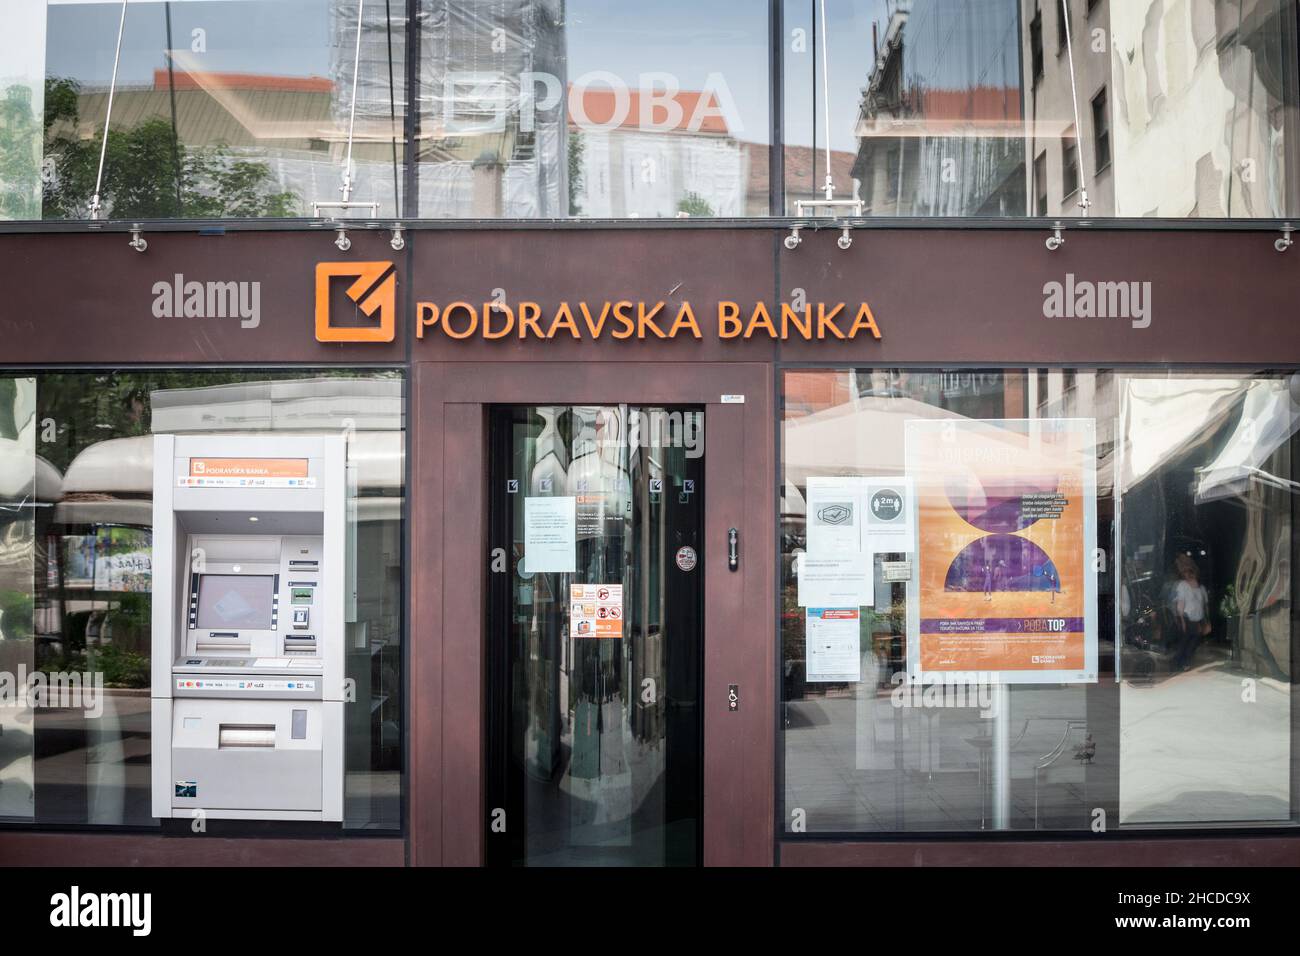 Immagine di un cartello Podravska Banka sul loro ufficio per Zagabria, Croazia. Podravska banka, o poba, è una vendita al dettaglio universale e commerciale e investimenti b Foto Stock